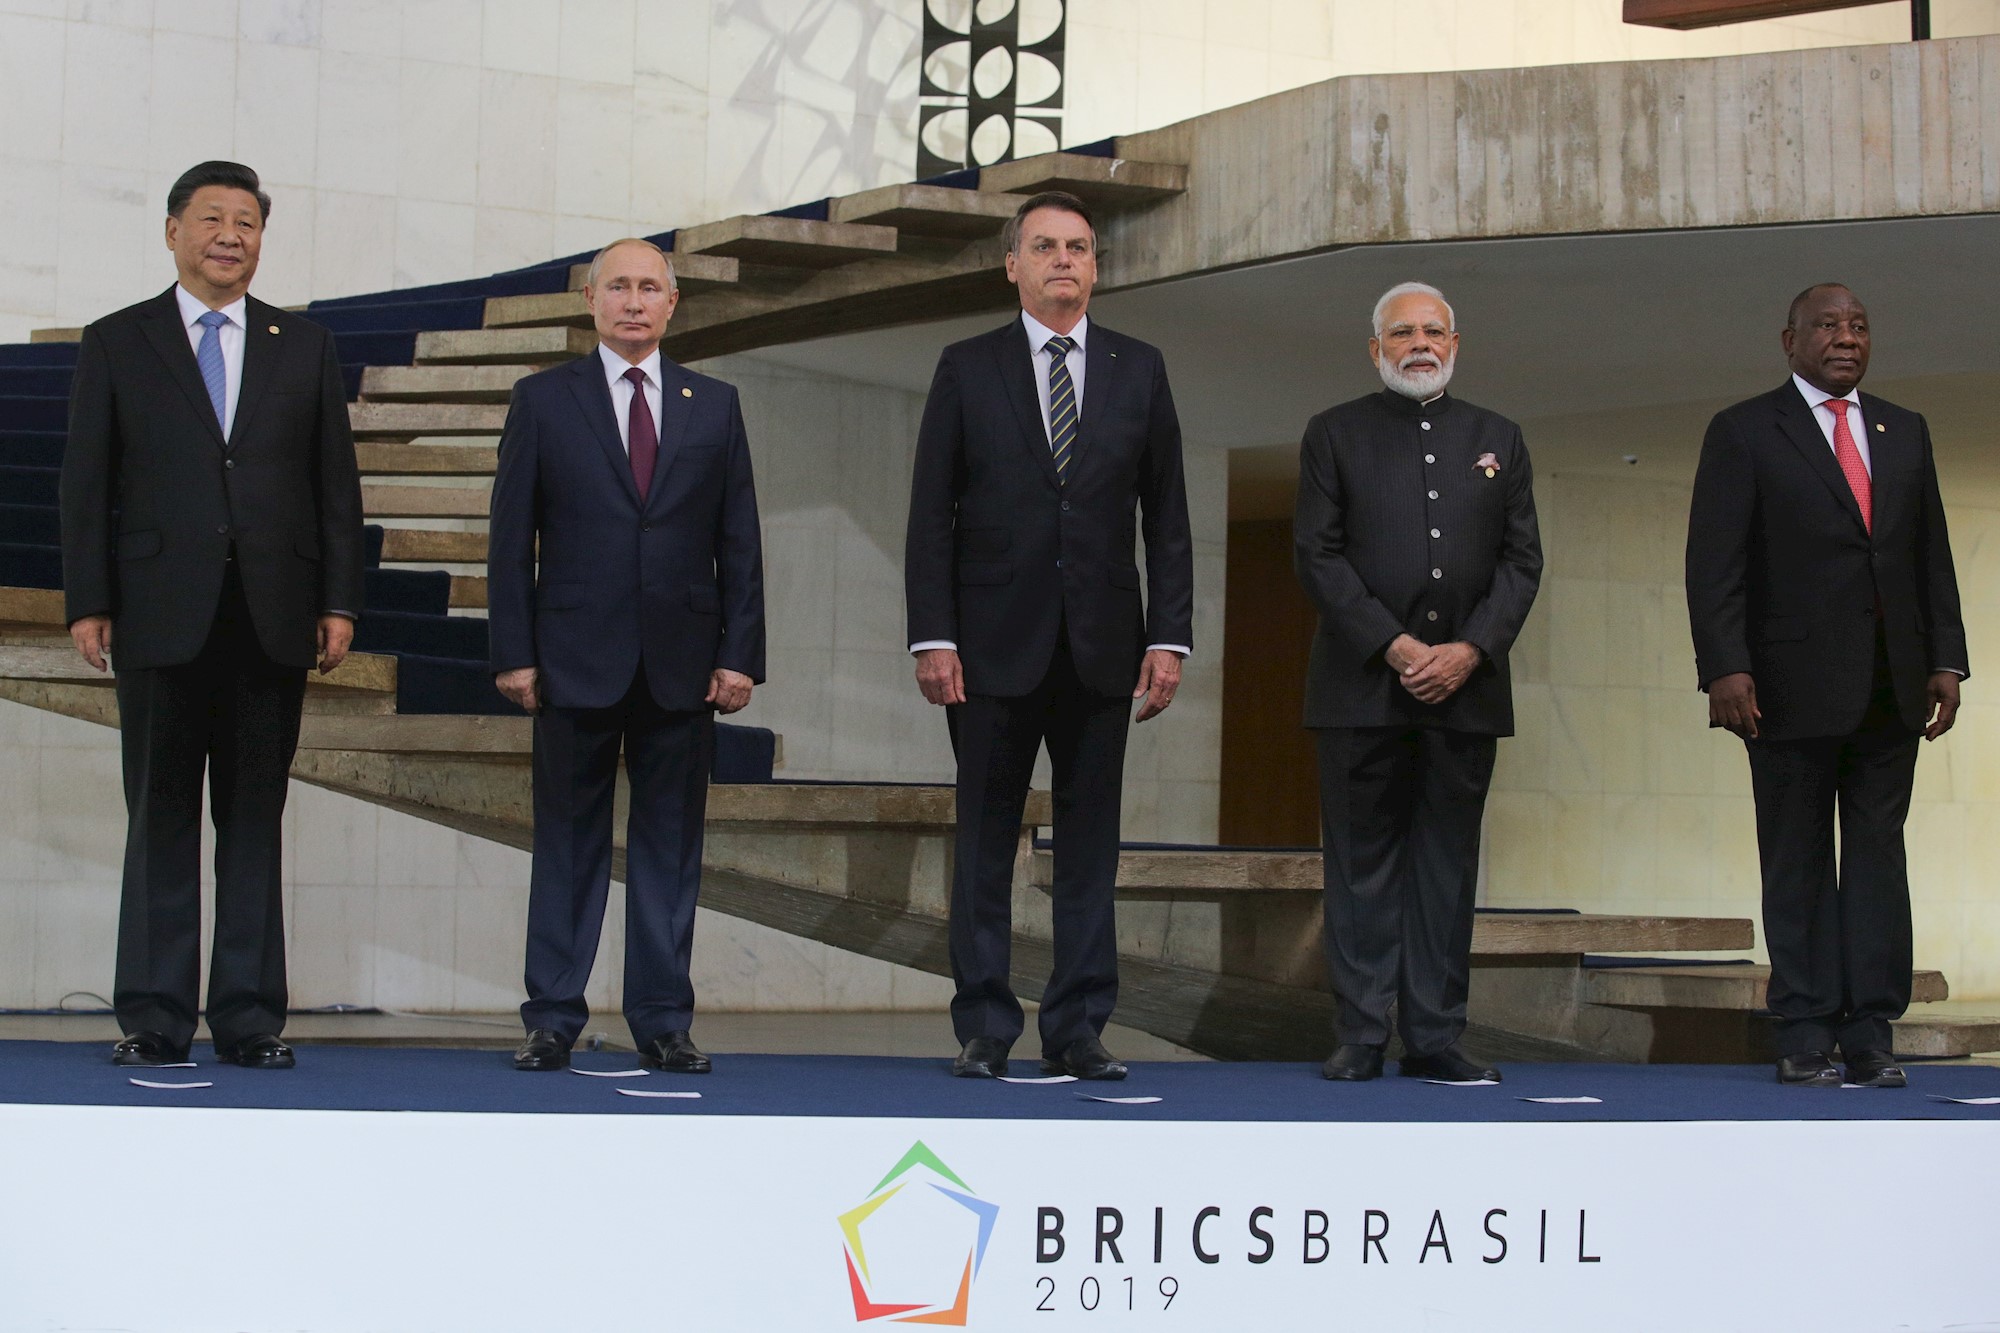 Los presidentes del Brics aprobaron por consenso la Declaración de Brasilia